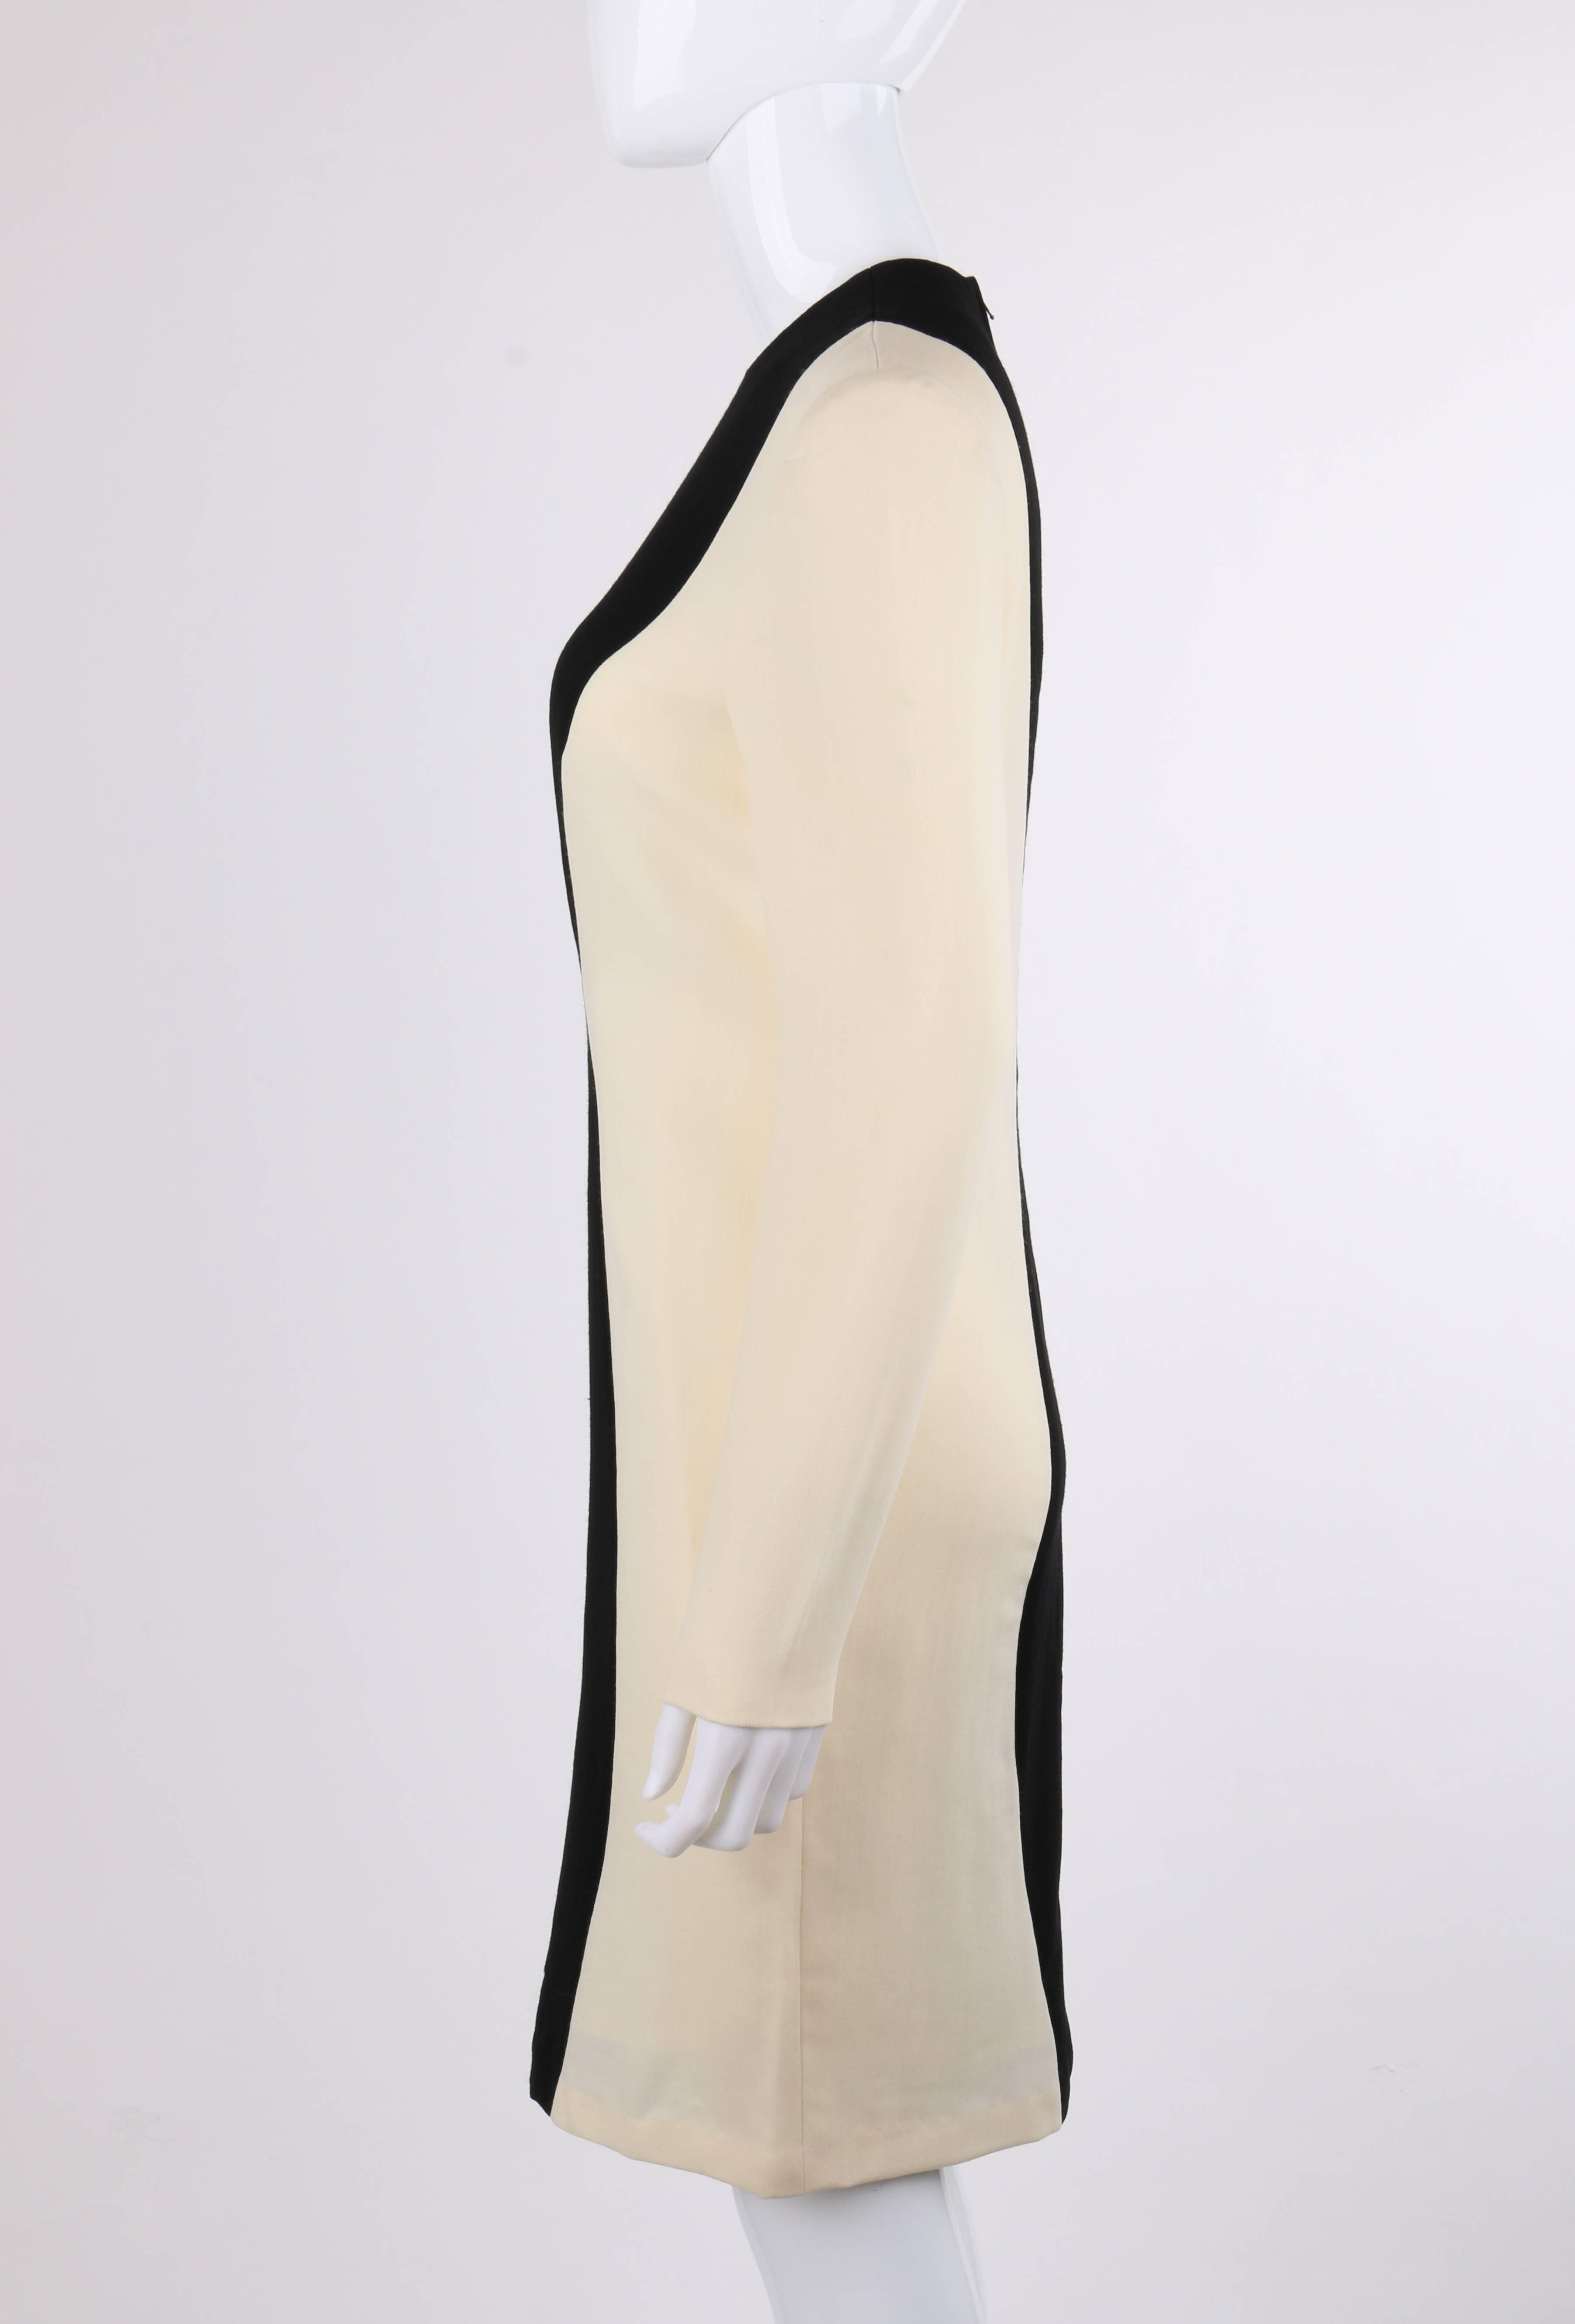 Women's PIERRE CARDIN c.1980's Black & Ivory Color-Block Wool Long Sleeve Shift Dress For Sale